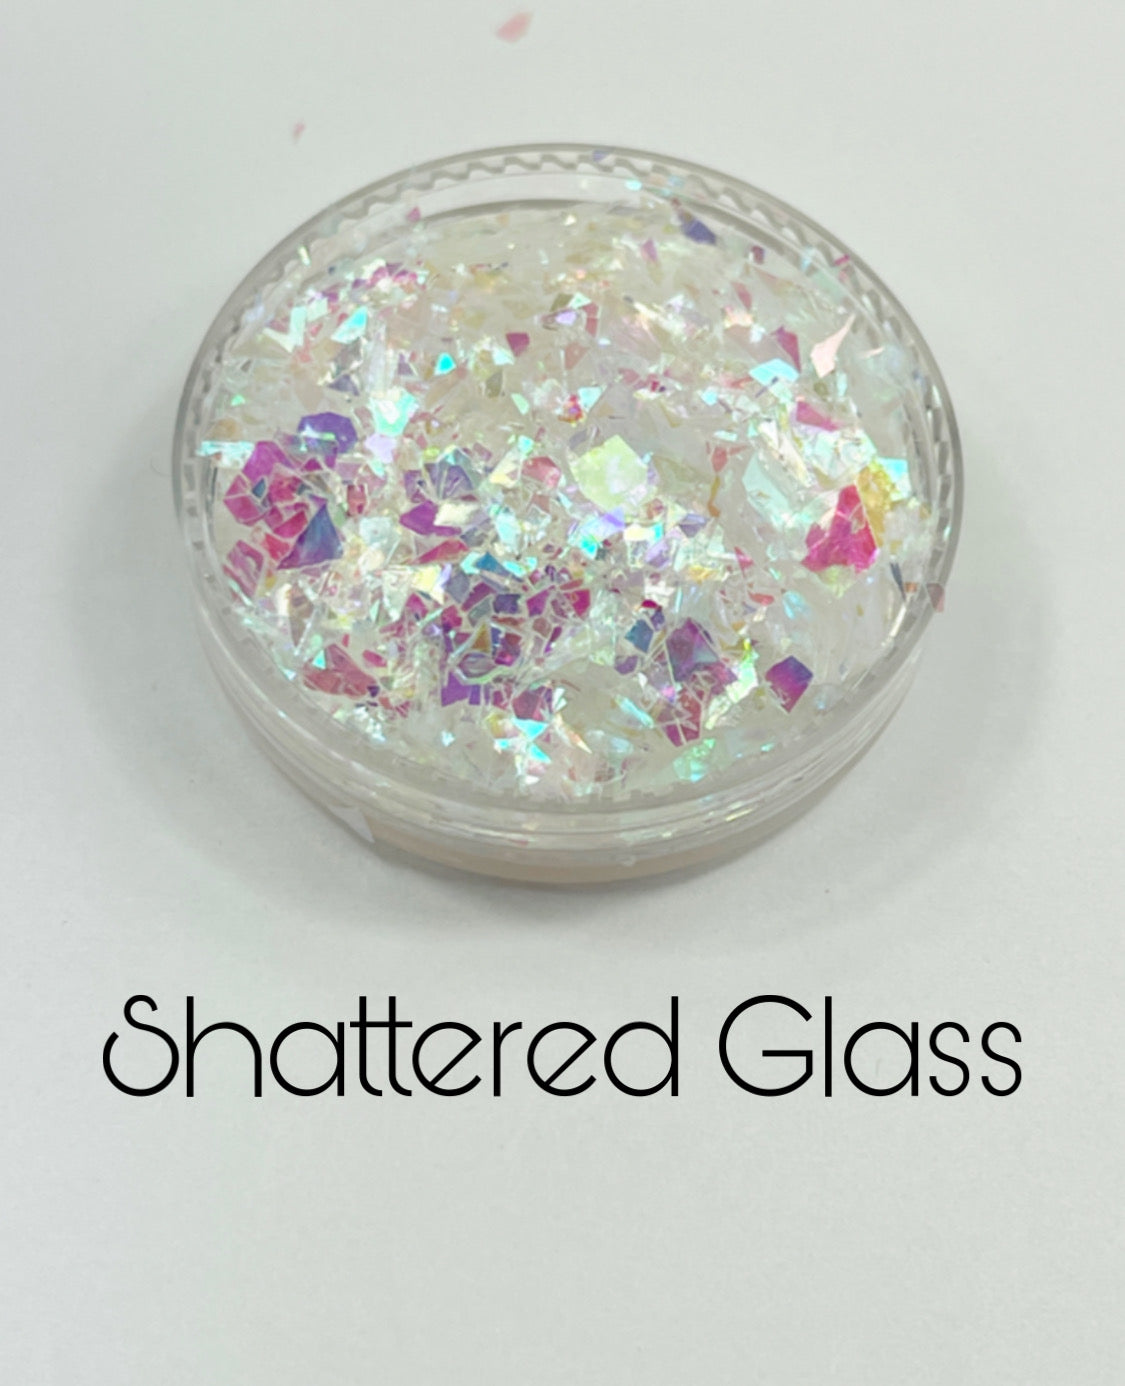 G0343 Shattered Glass